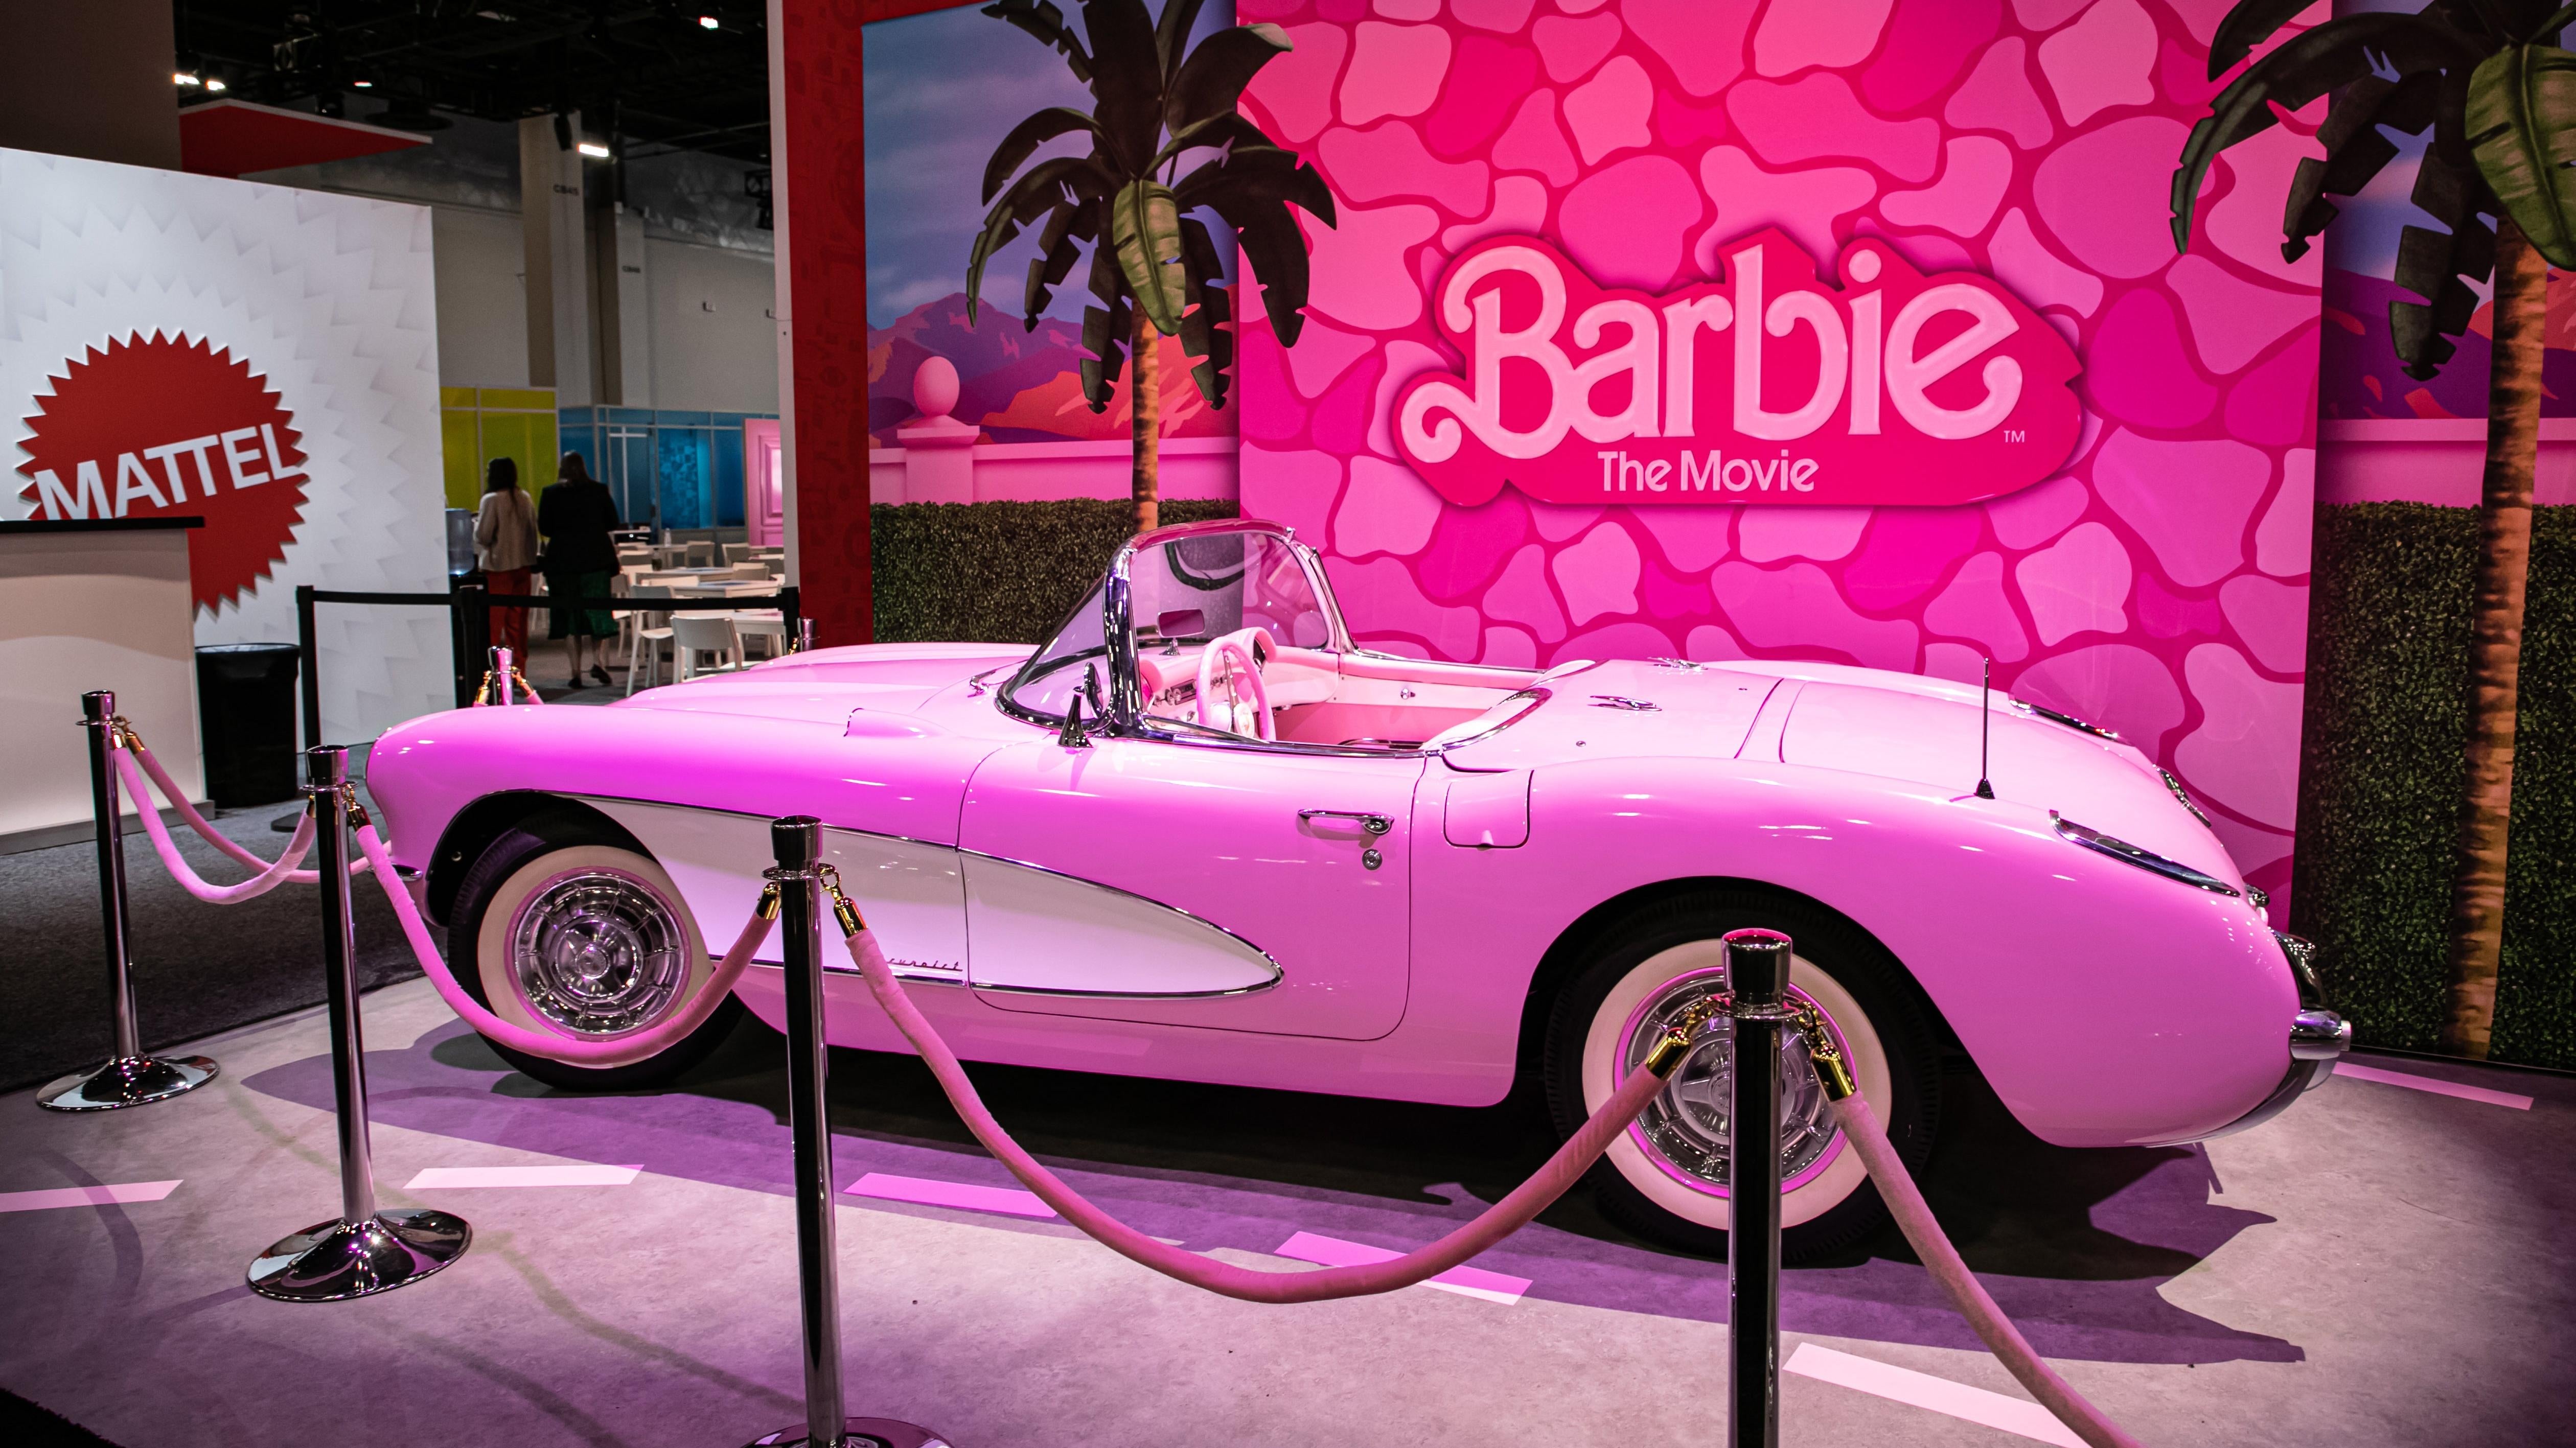 Barbie Movie Car: Margot Robbie's Pink Corvette on Display